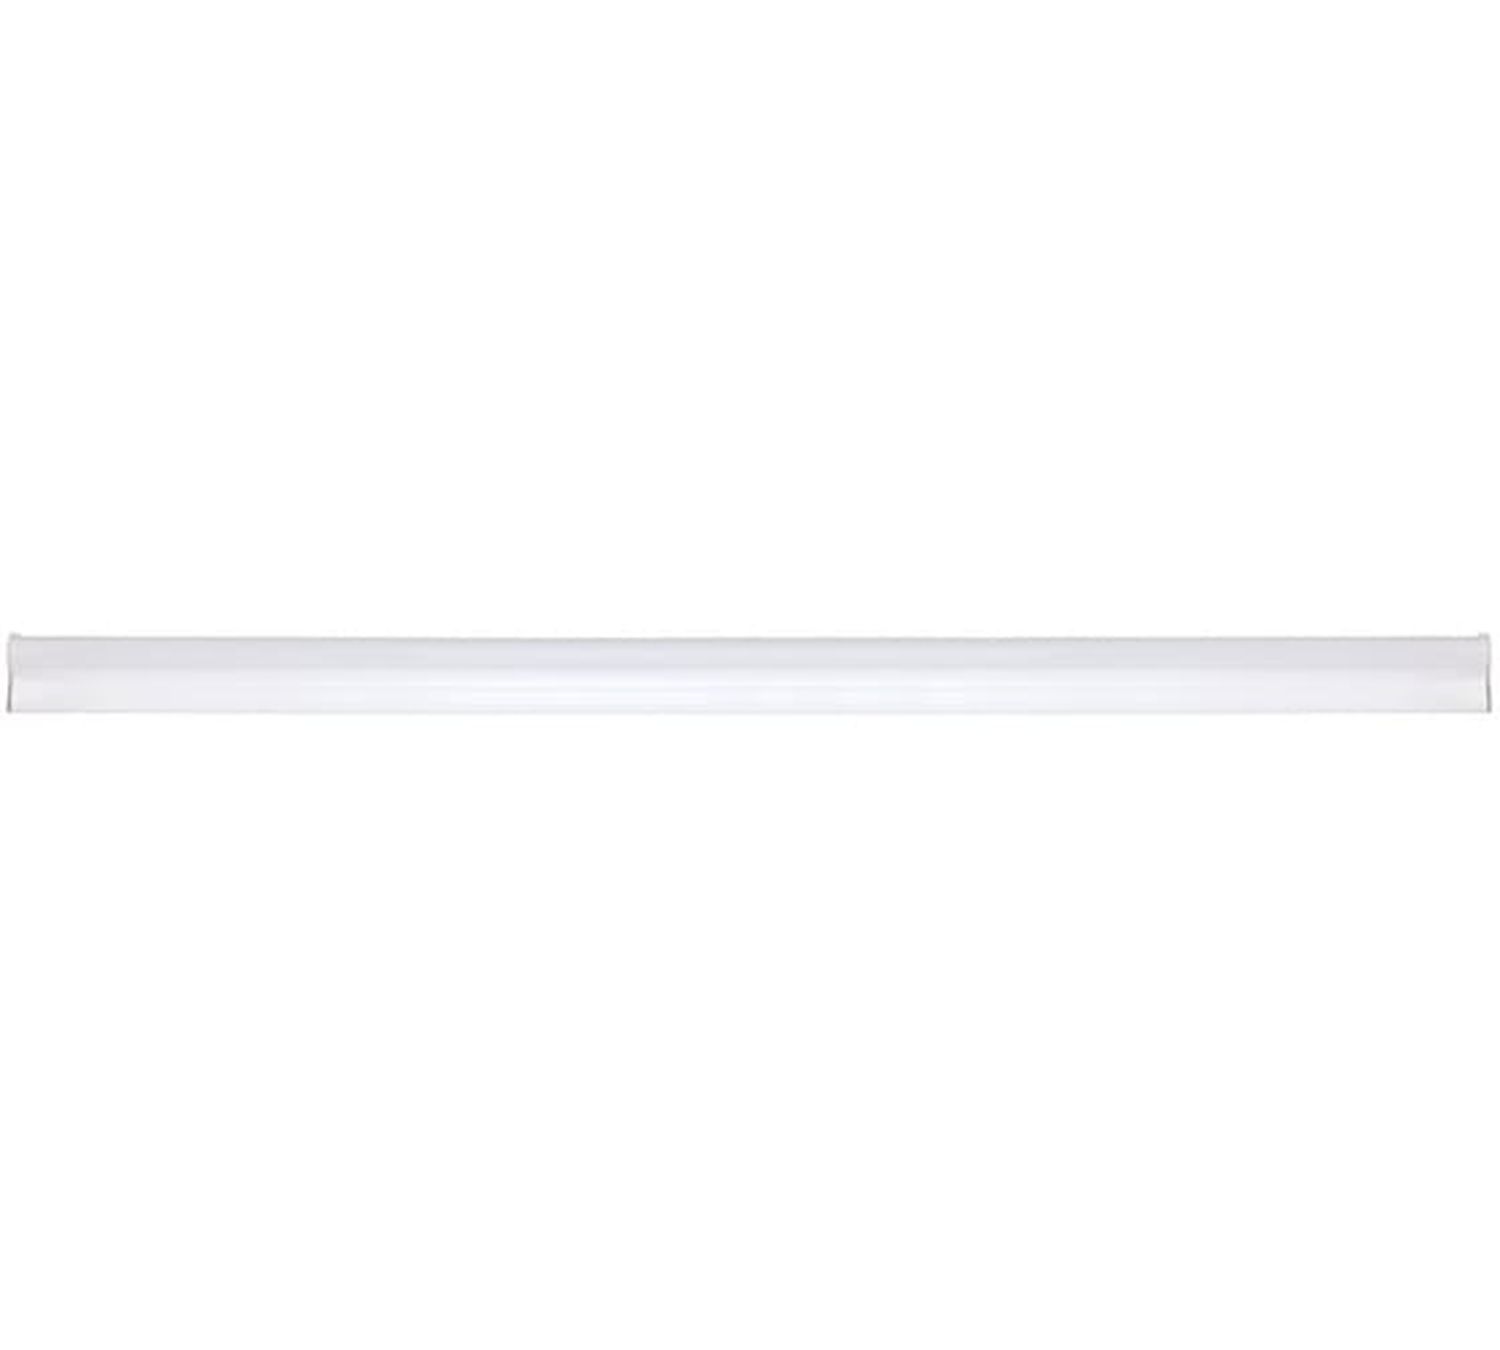 Светильник светодиодный 40LED LWL-2013-8CL линейный 8Вт 4000К IP20 525Лм 575мм 220В алюм. корпус с сетевым проводом 12327 Ultraflash